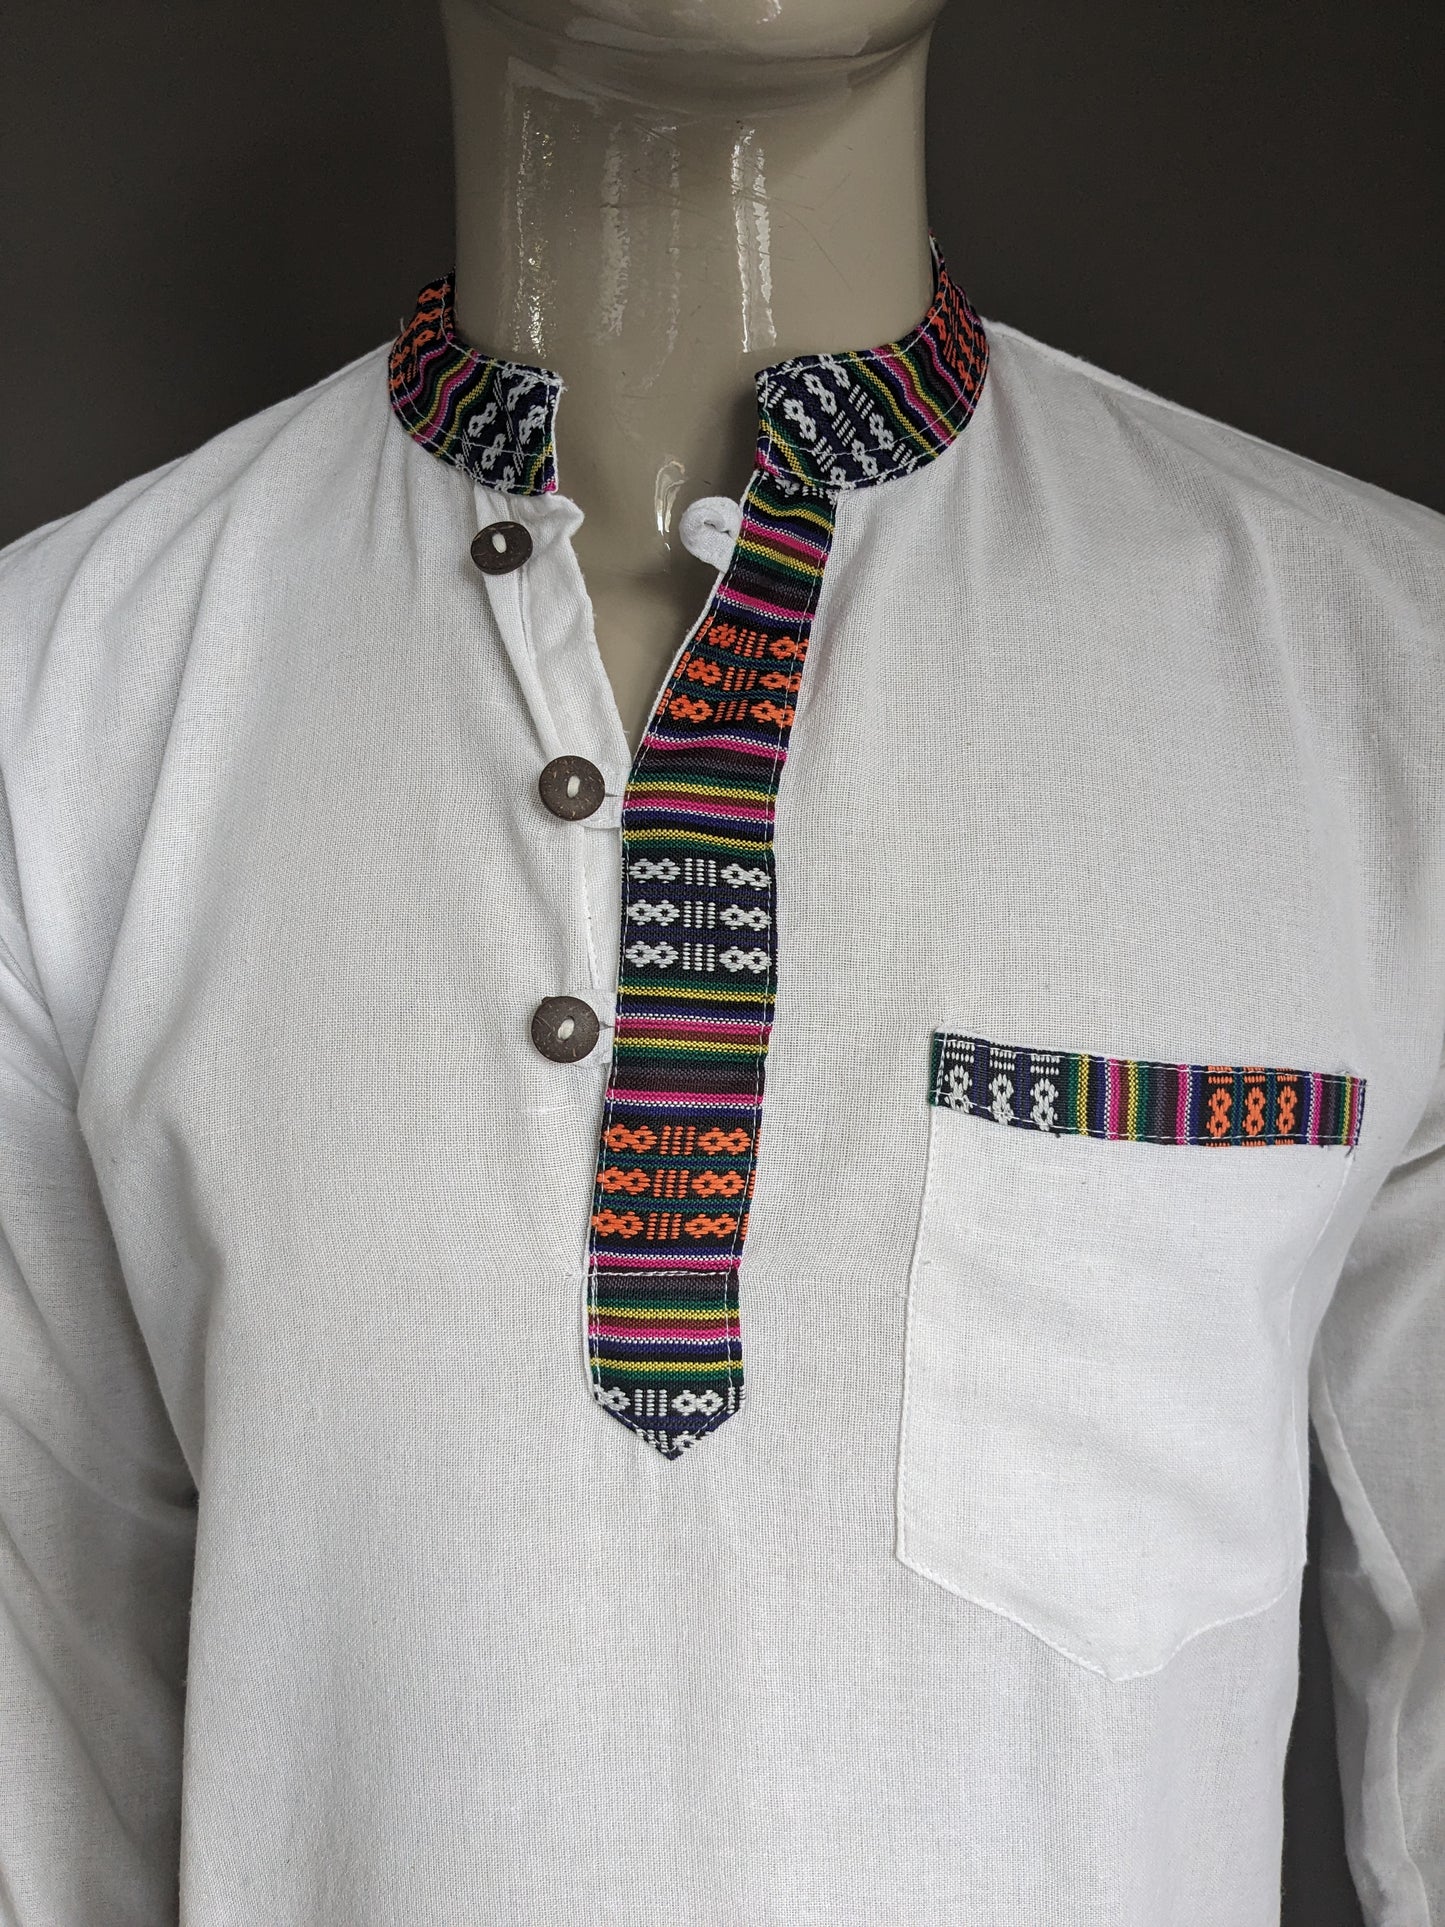 Camisa vintage camisa con mao / agricultor / cuello de pie. Blanco con bordes de colores. Talla M.